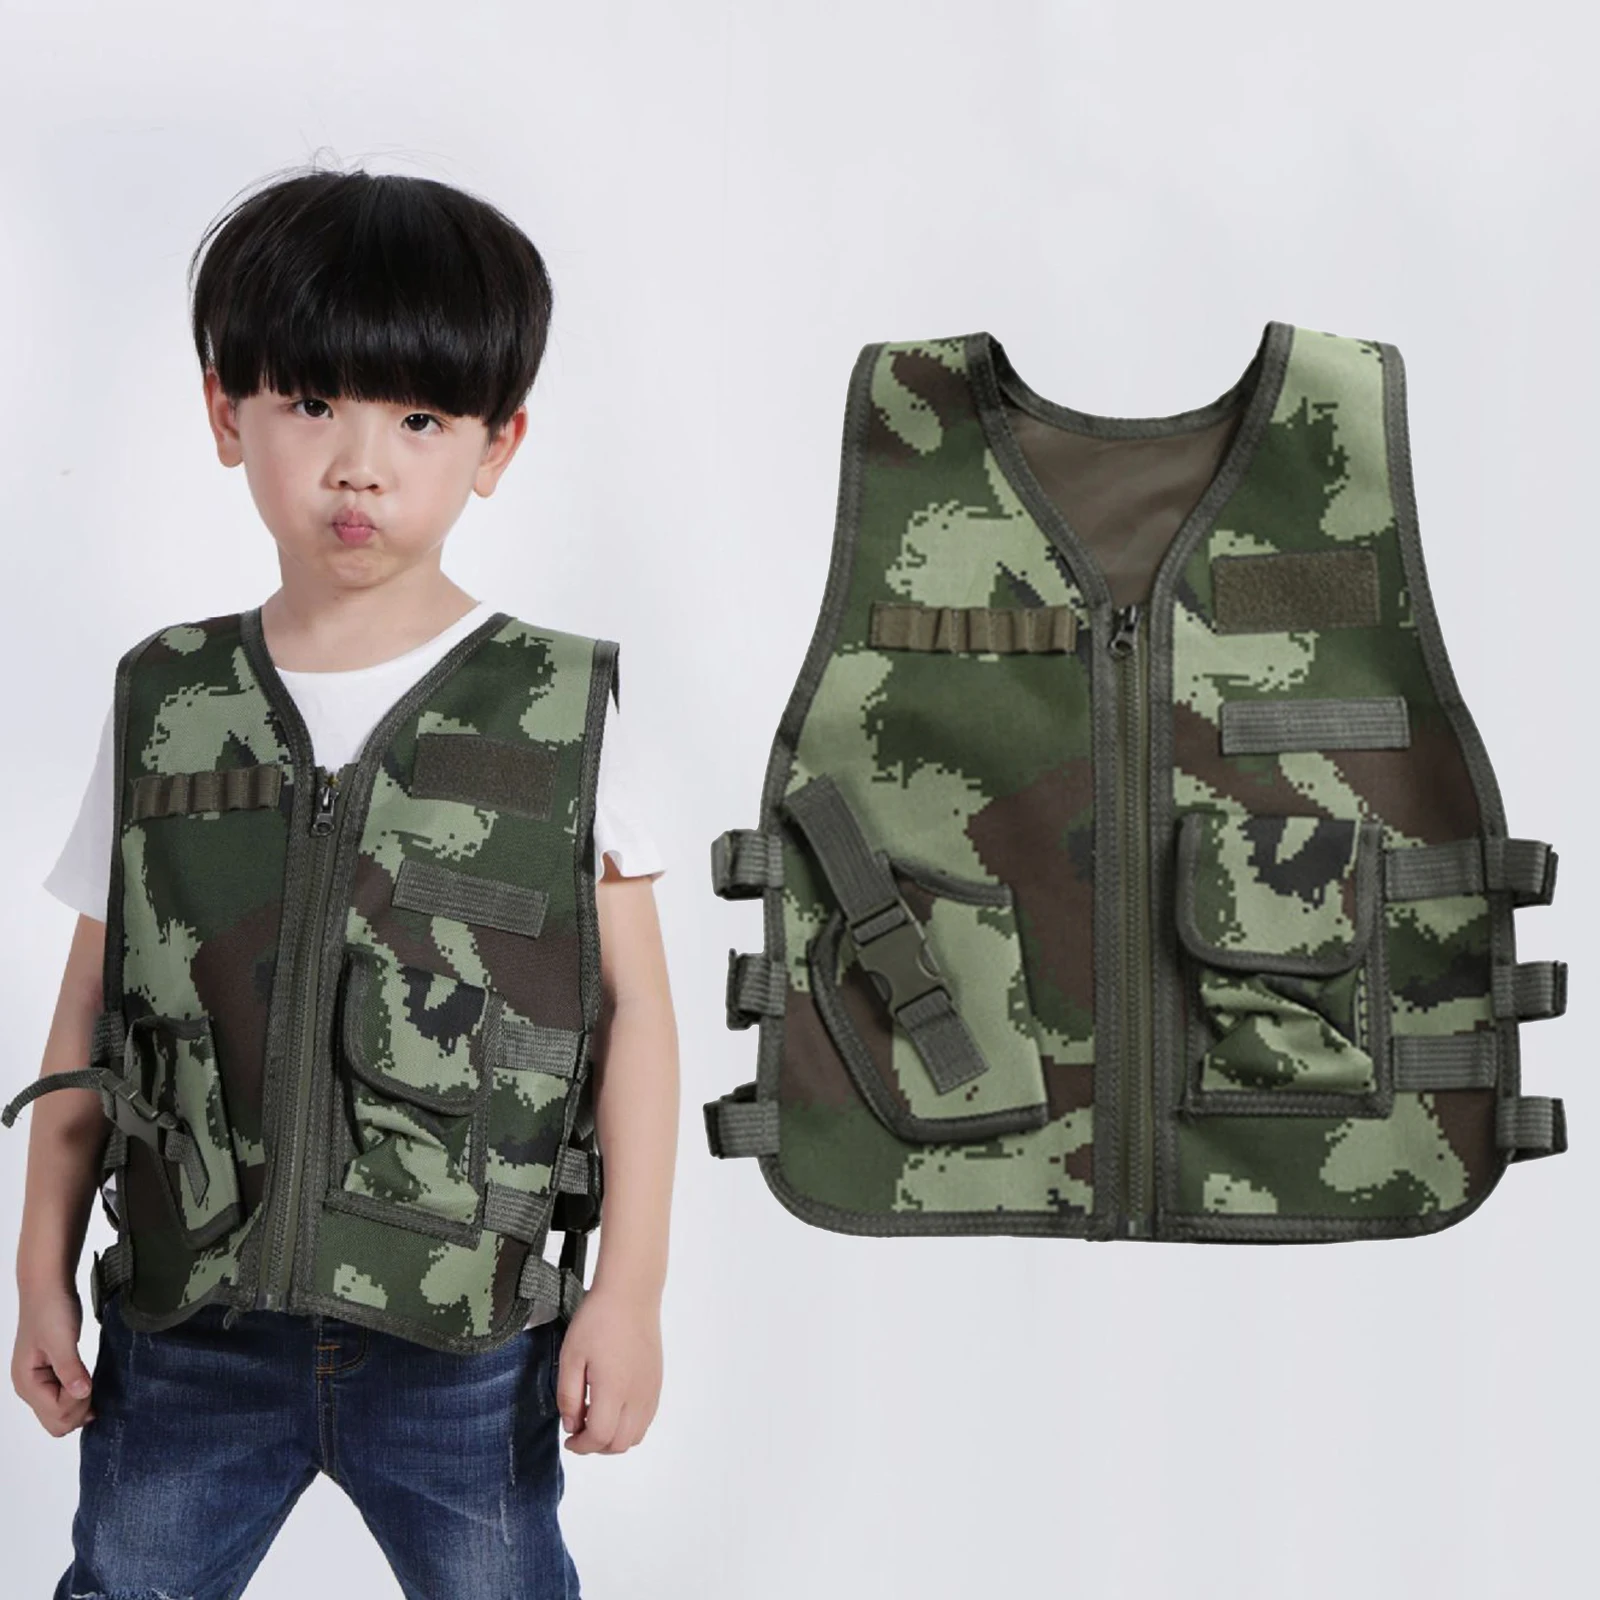 Kids Tactical Vest Holster Waistcoat Assault Gear Army Plate Carrier Outdoor